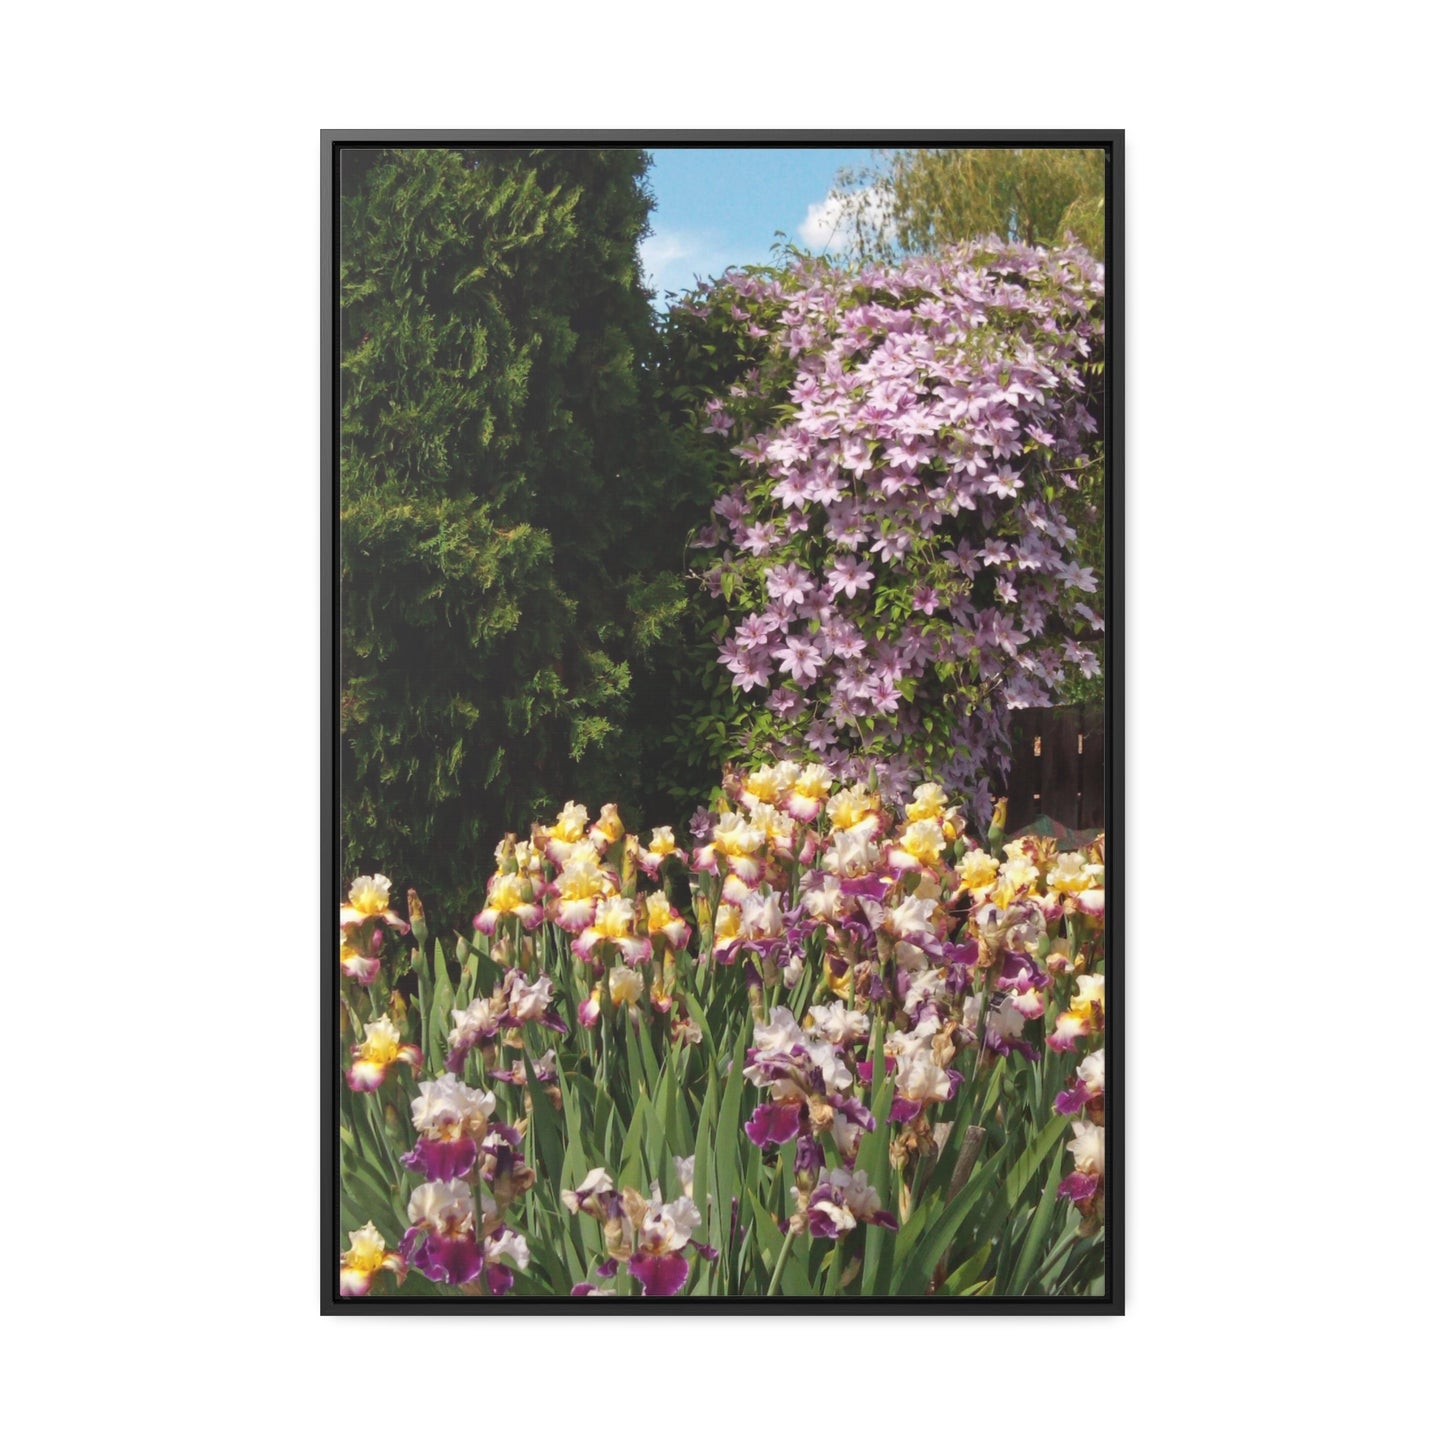 Sunny Iris Garden Gallery Canvas Wraps Framed